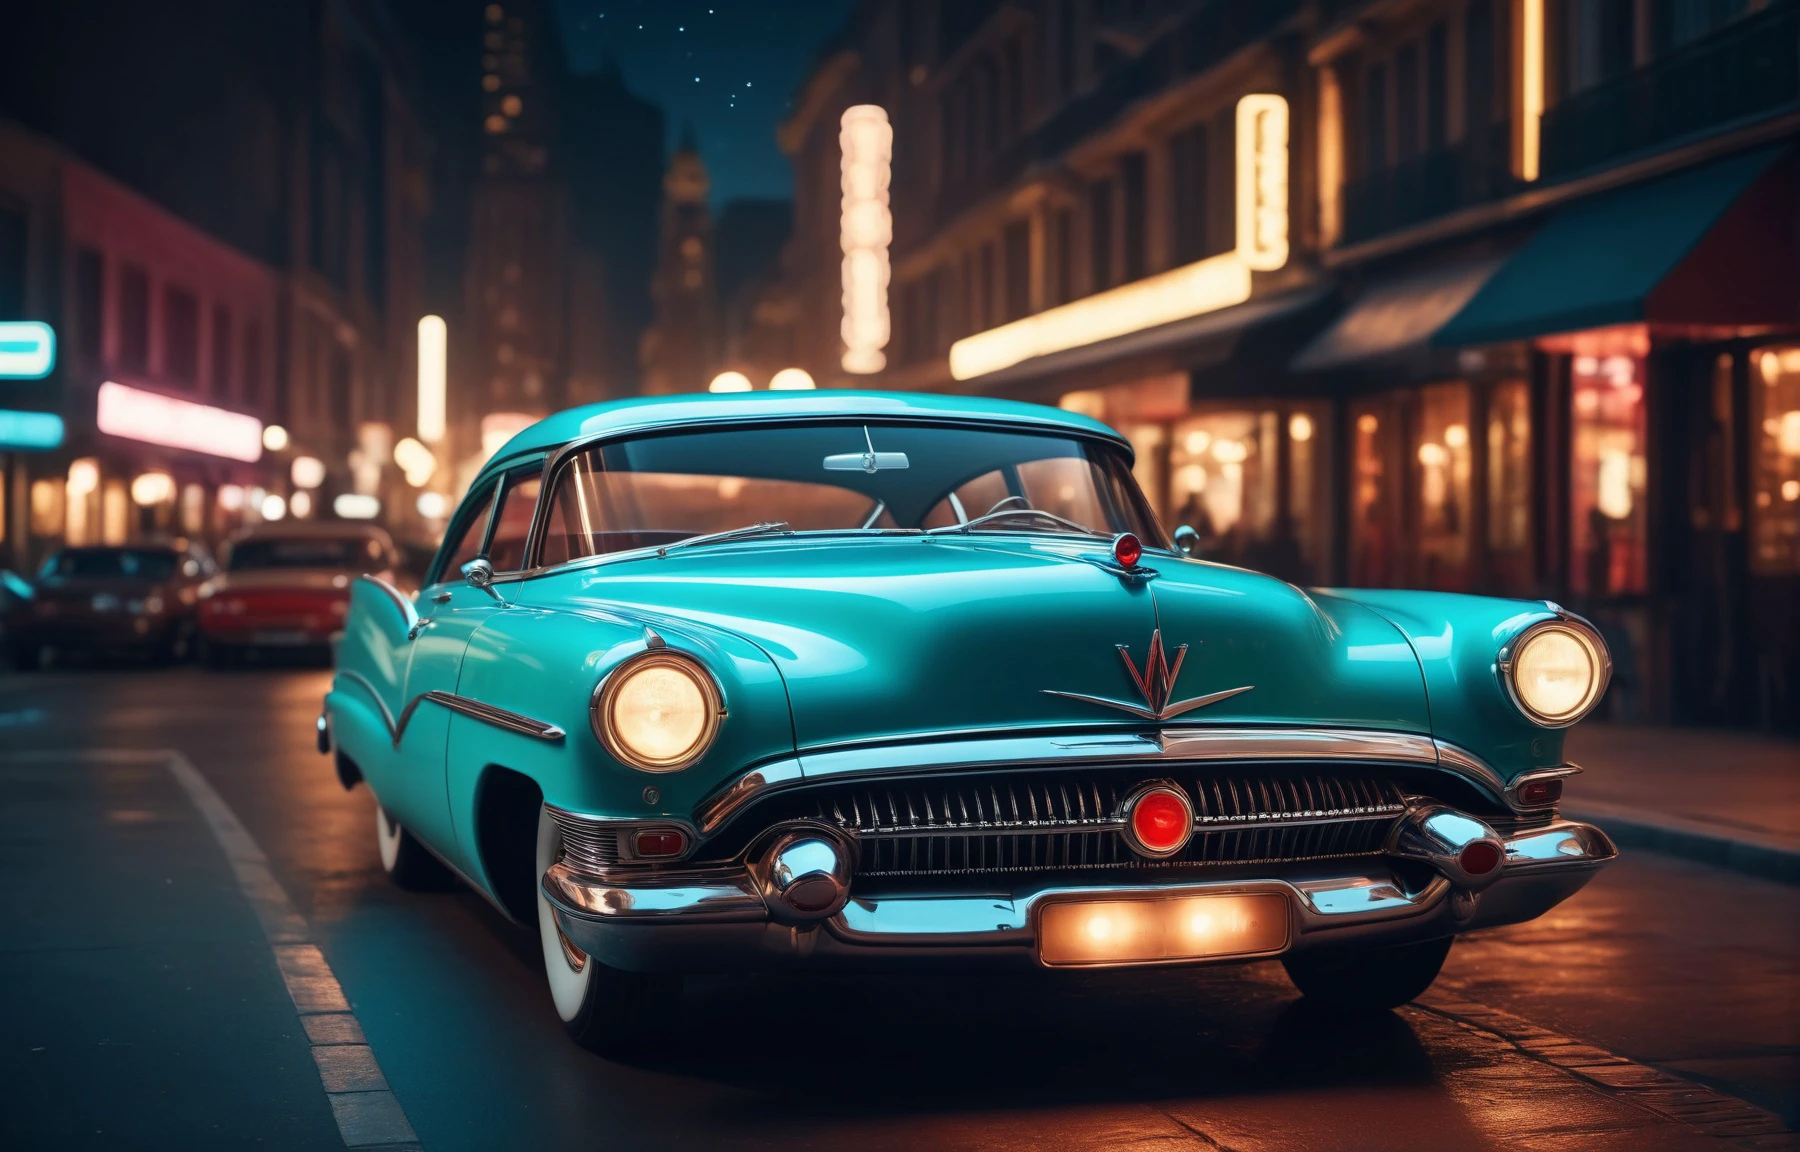 时尚摄影, 20 世纪 50 年代复古未来主义风格的汽车夜间照片, 低光, 散景, 复杂的细节, 充满活力的氛围, 清晰聚焦, 4k, 8千, 高质量